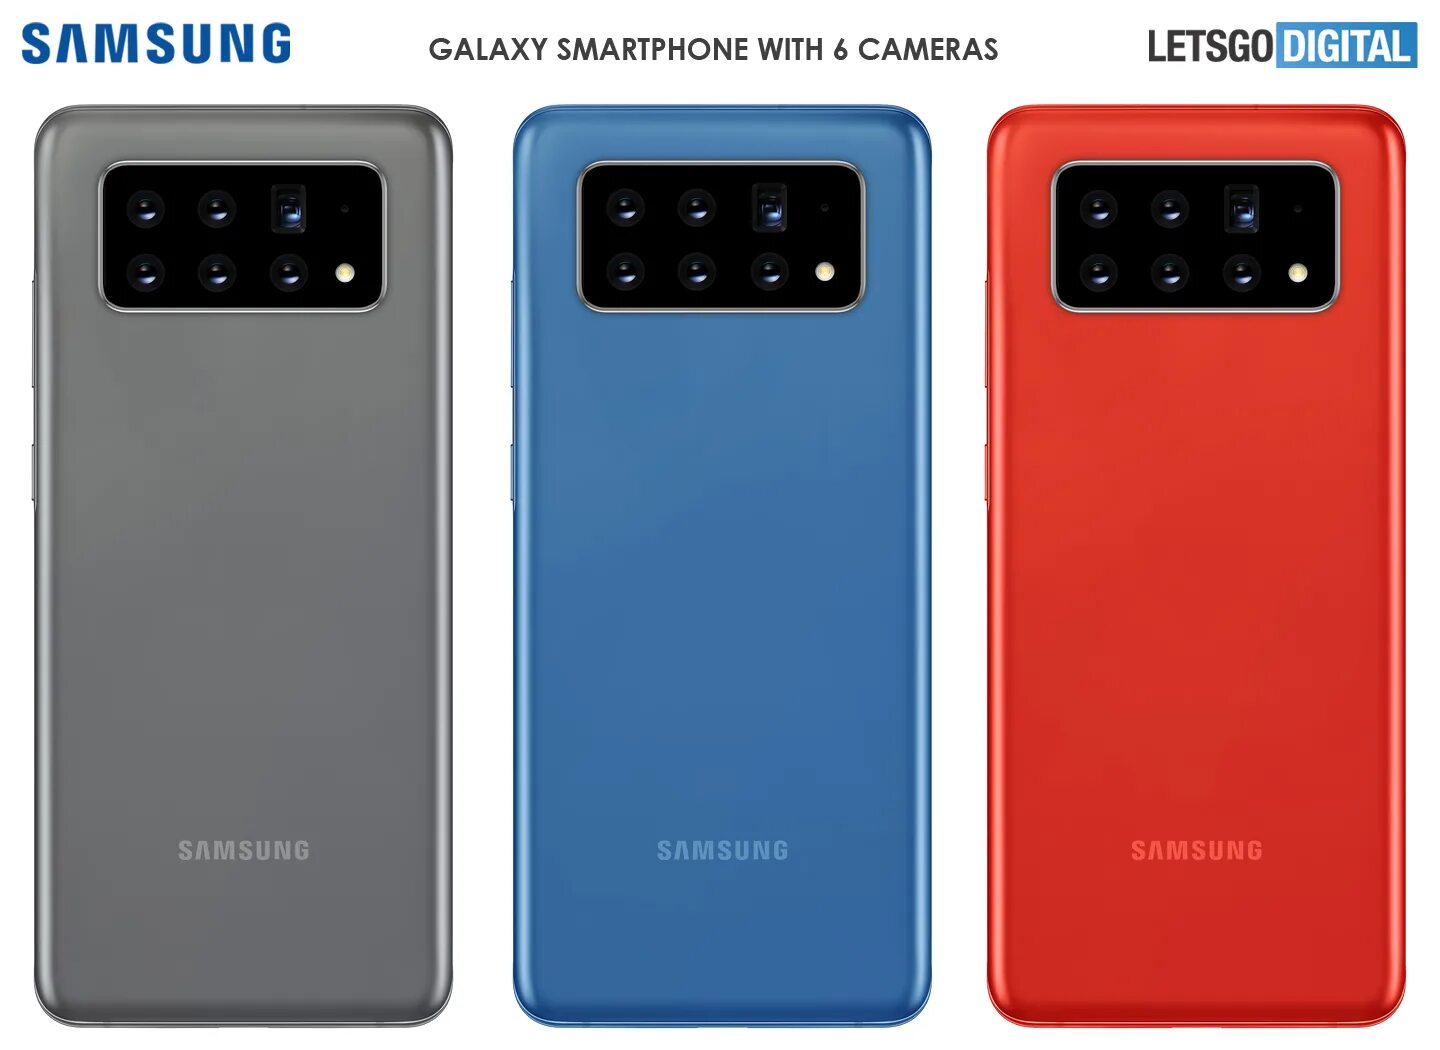 Телефон ново 4. Samsung с 6 камерами. Samsung 5 камер. Новый самсунг 6 камер. Самсунг 3 камеры 2021.